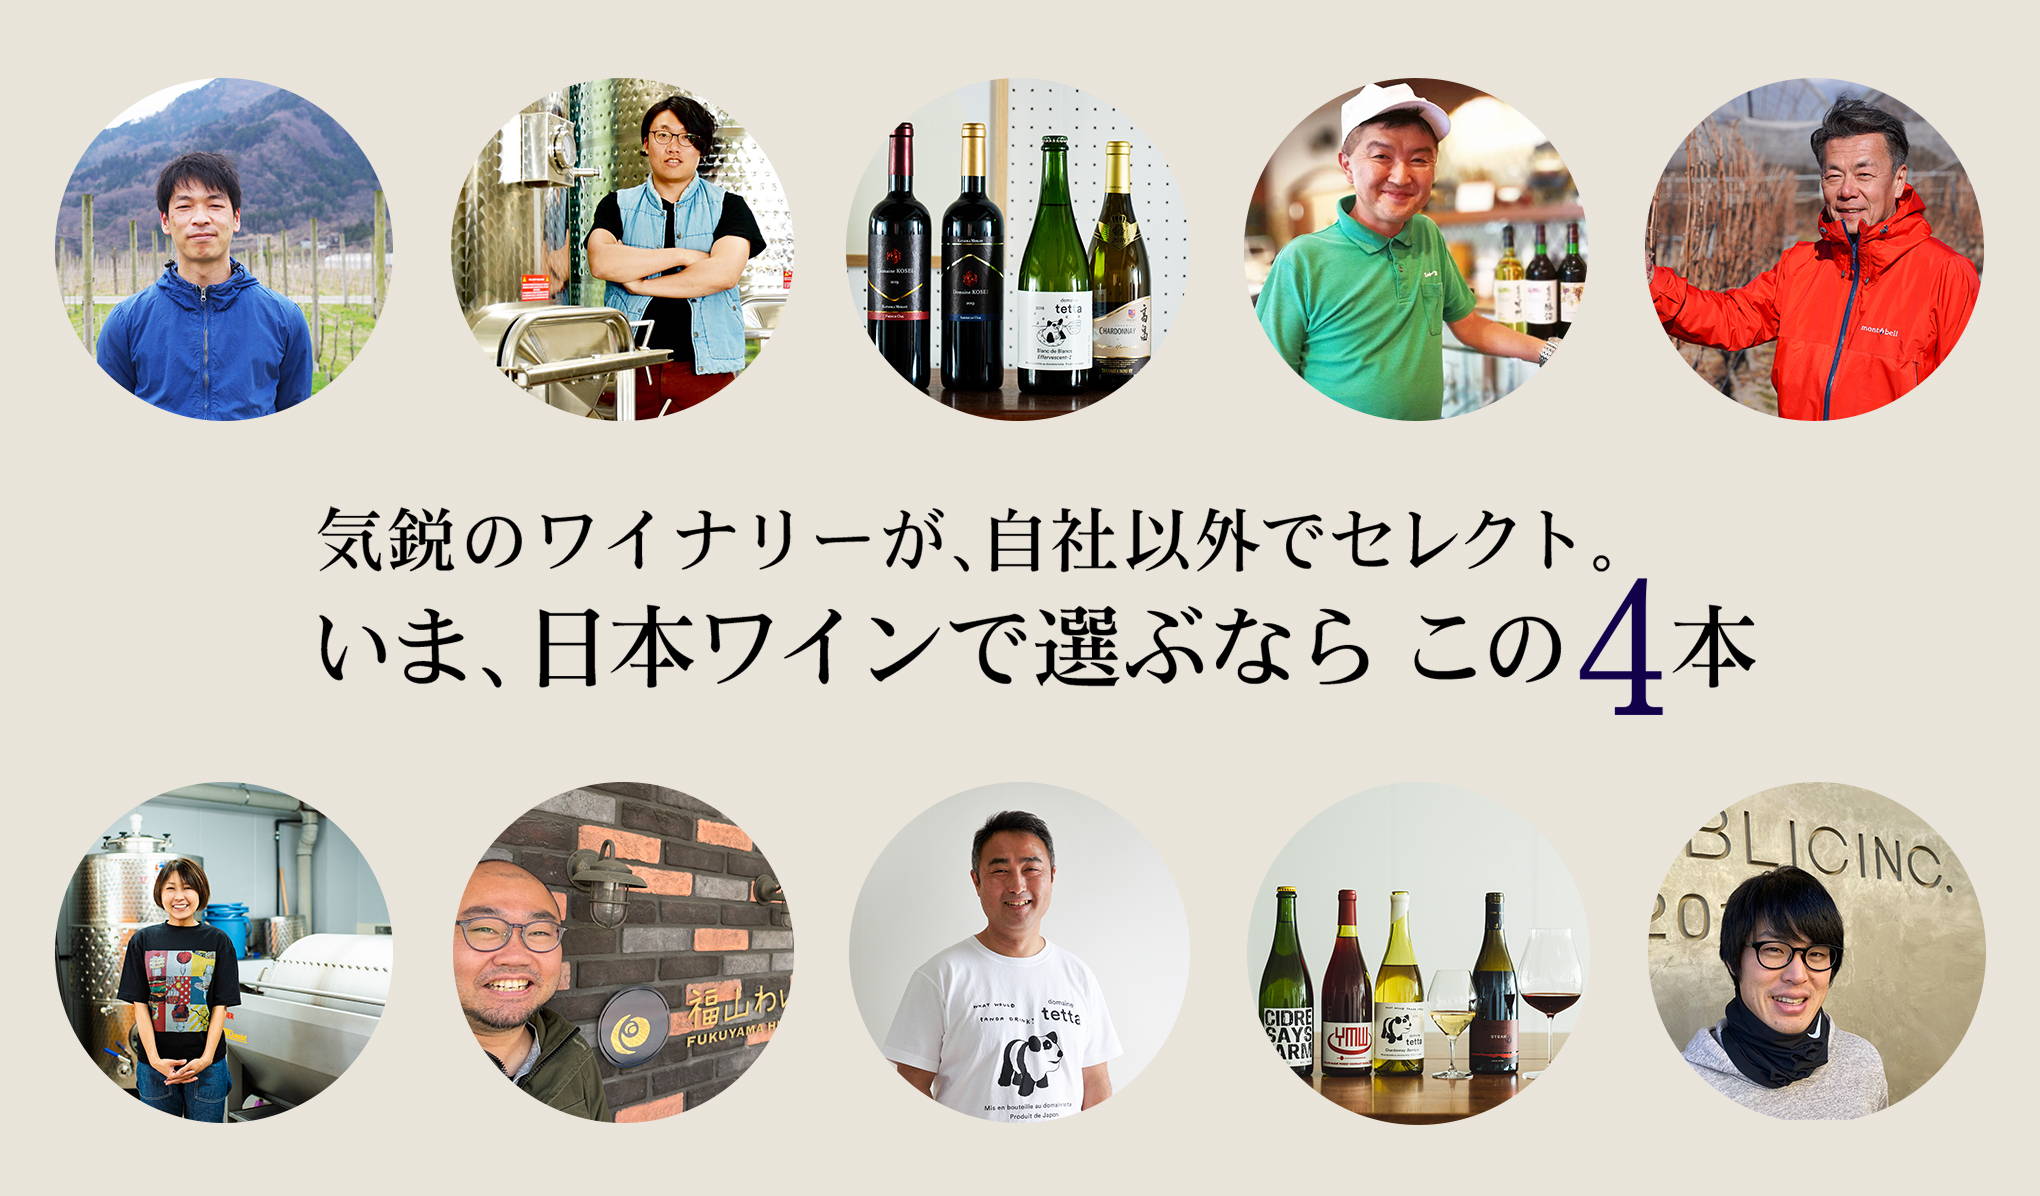 気鋭のワイナリーが、自社以外でセレクト。 いま、日本ワインで選ぶならこの4本